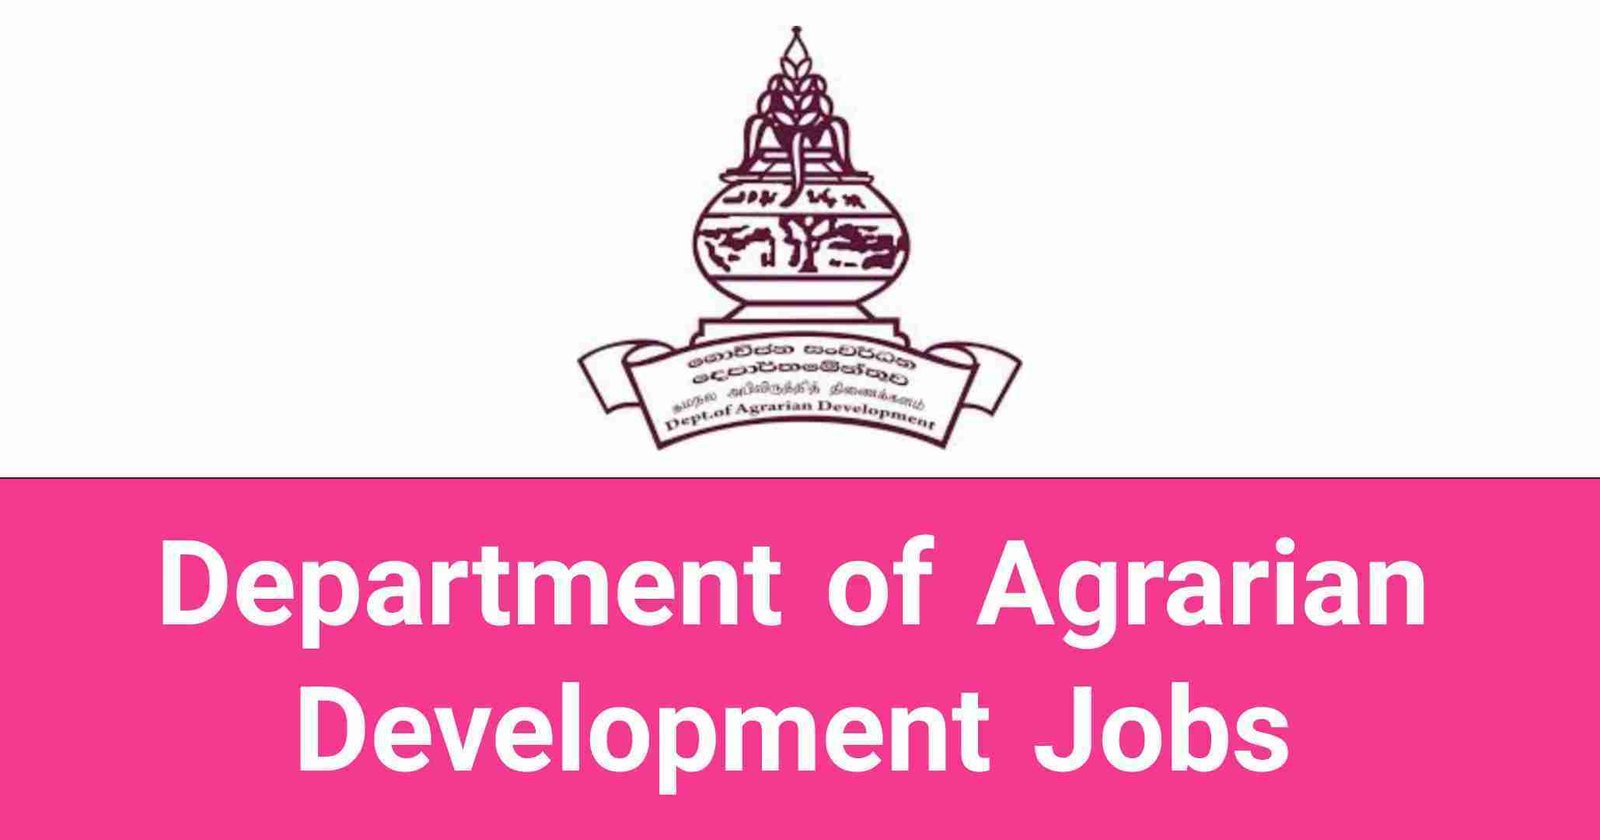 Department of Agrarian Development Jobs Vacancies